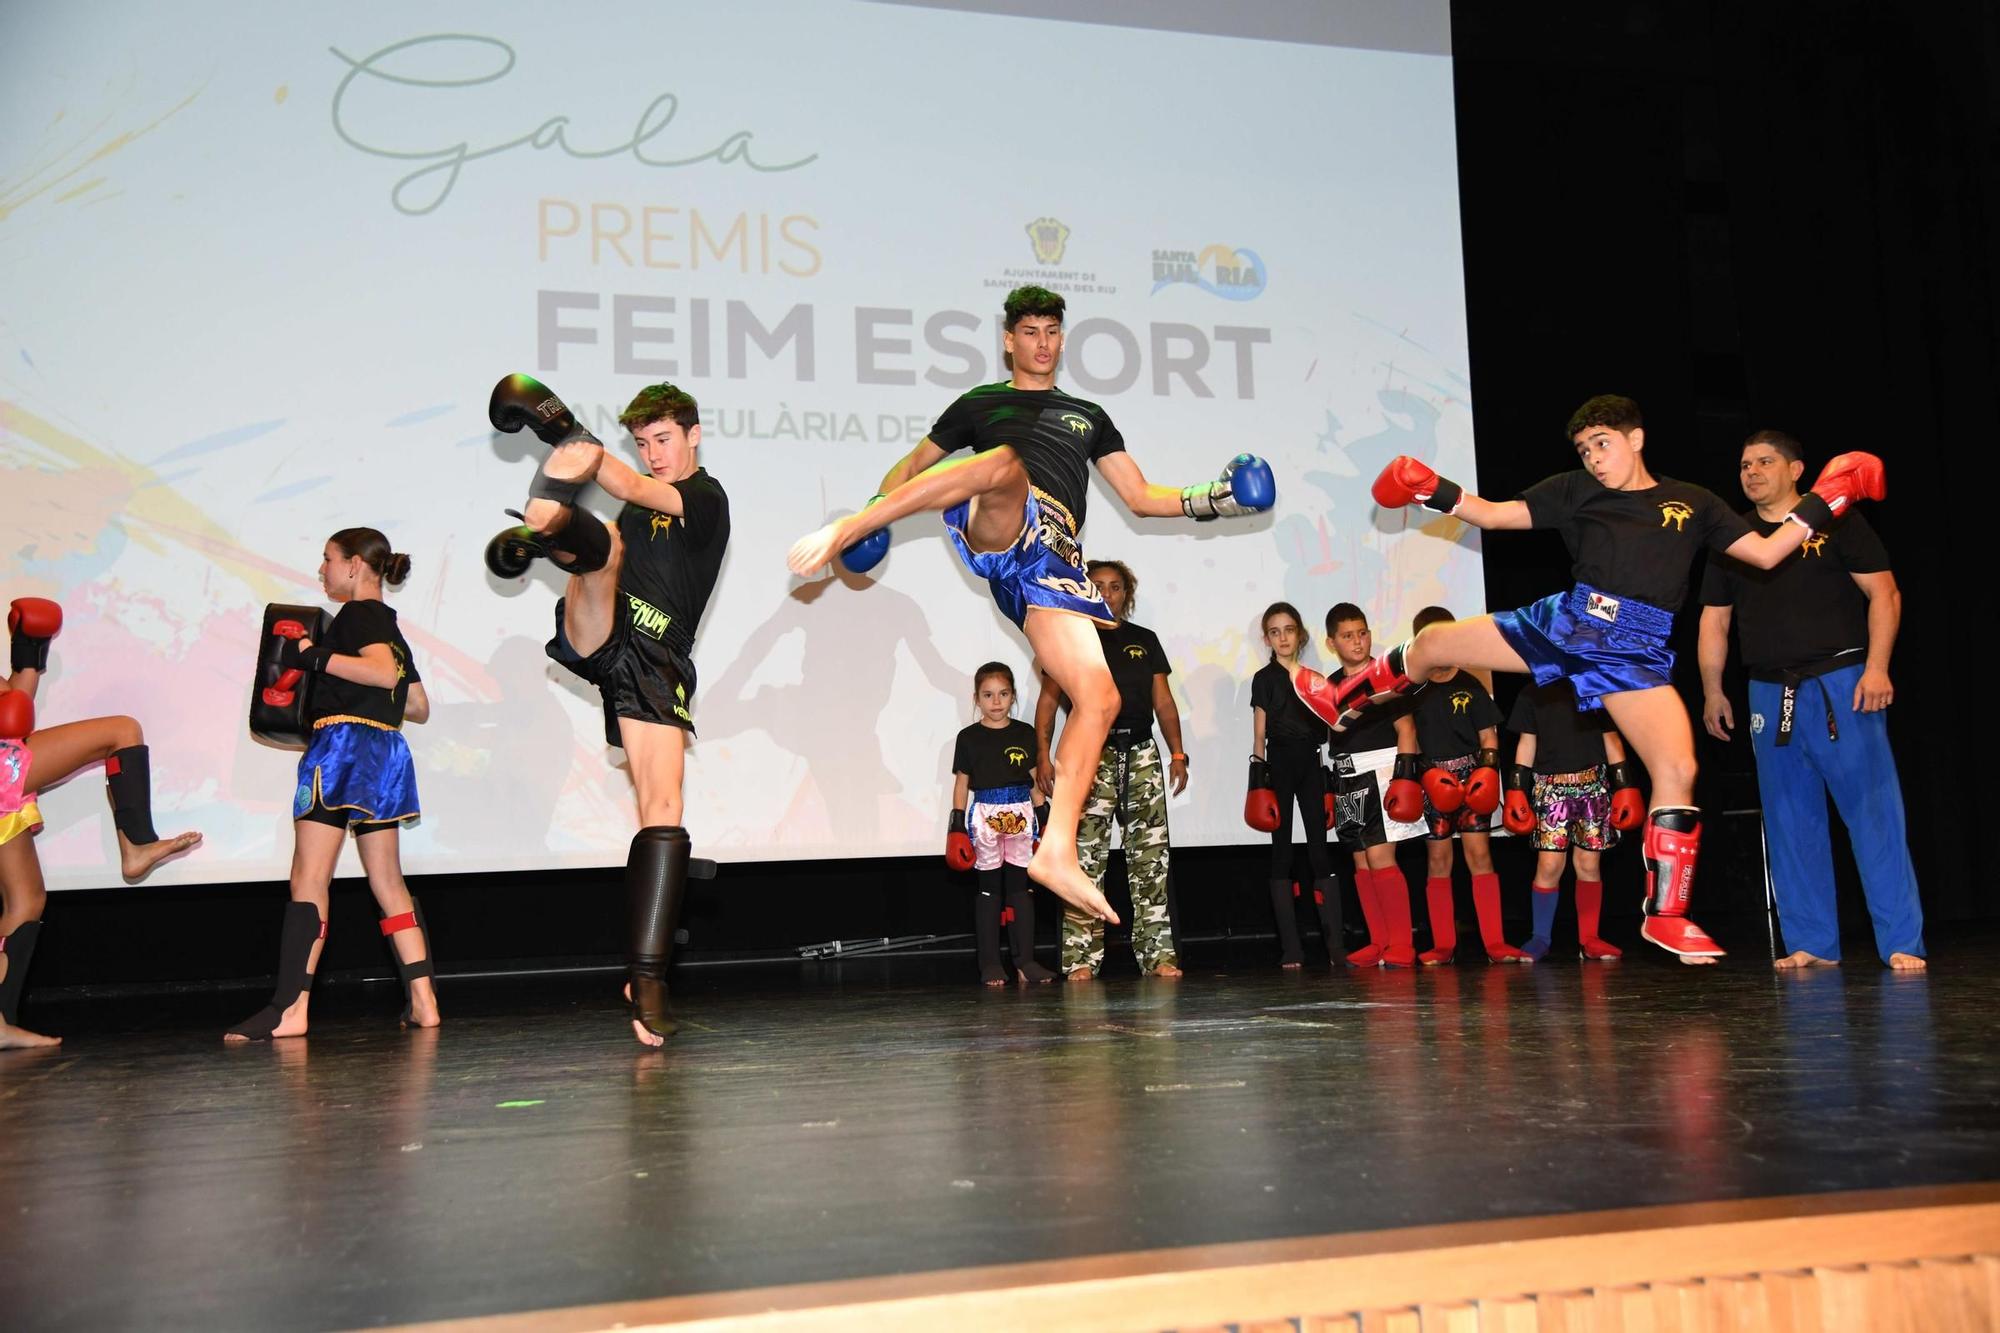 Mira aquí todas las imágenes de la gala de premios Feim Esports de Santa Eulària